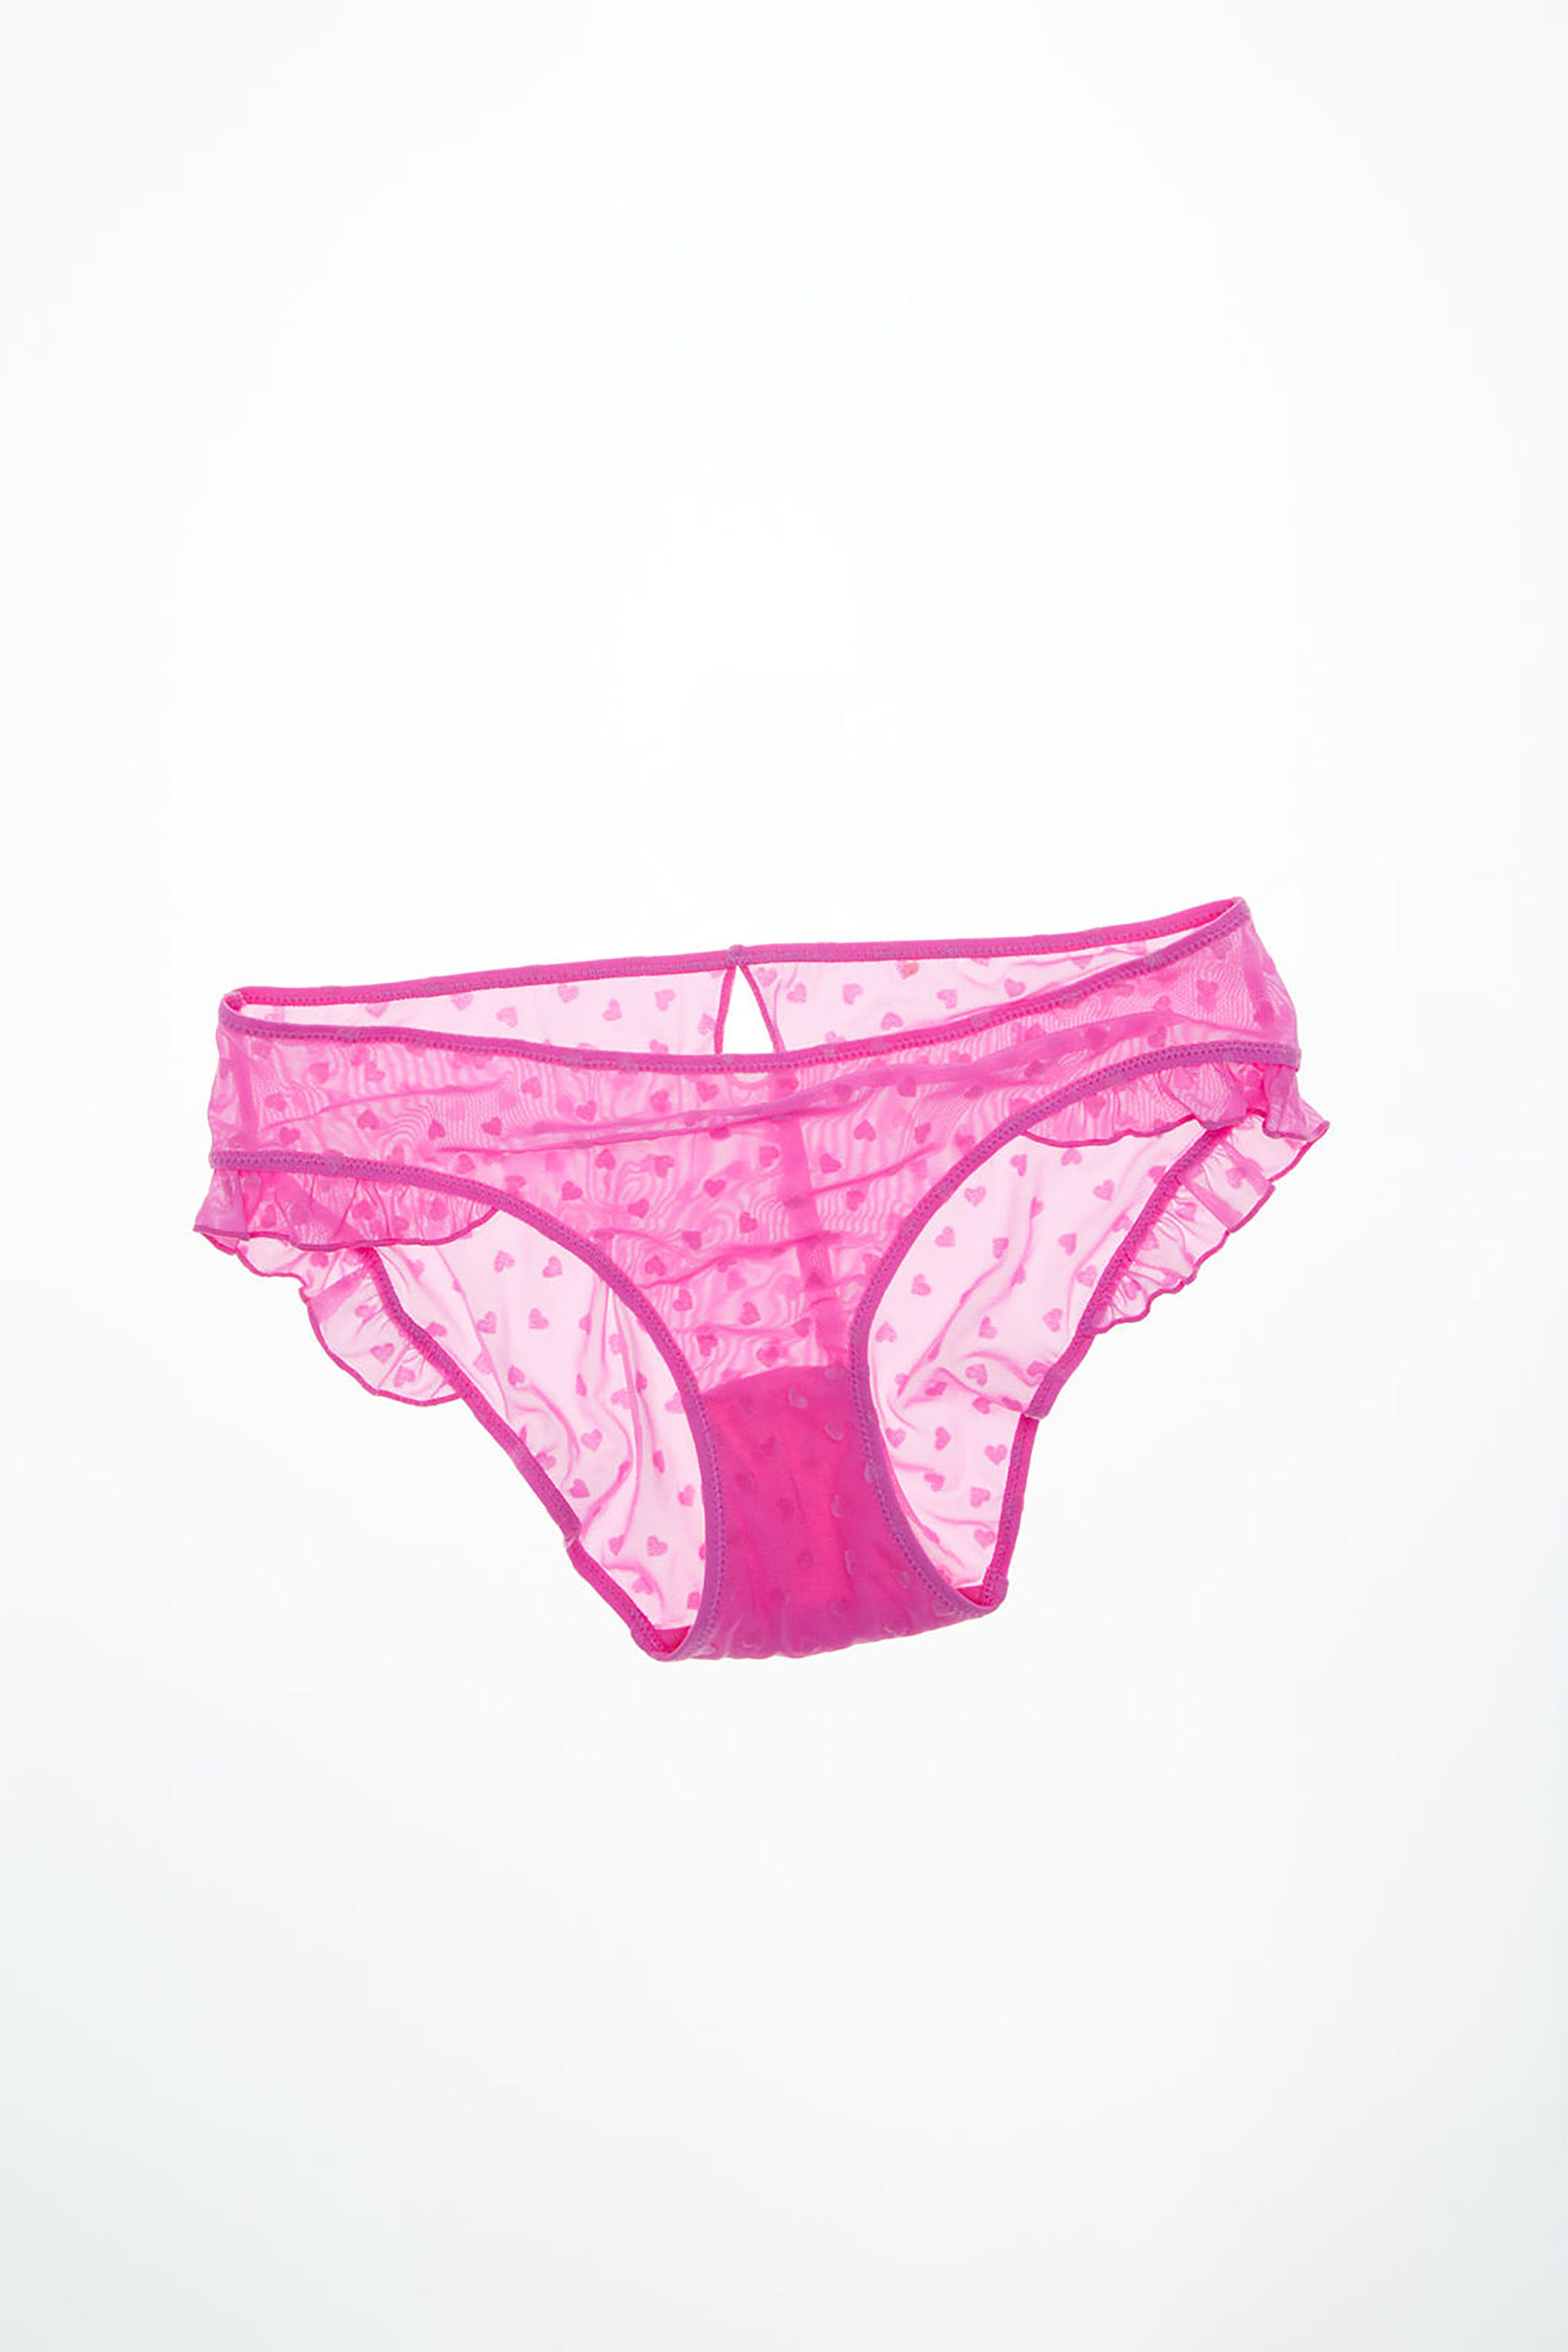 Intimates & Sleepwear, Cotton Candy Victoria Secret Pink Bra 36c